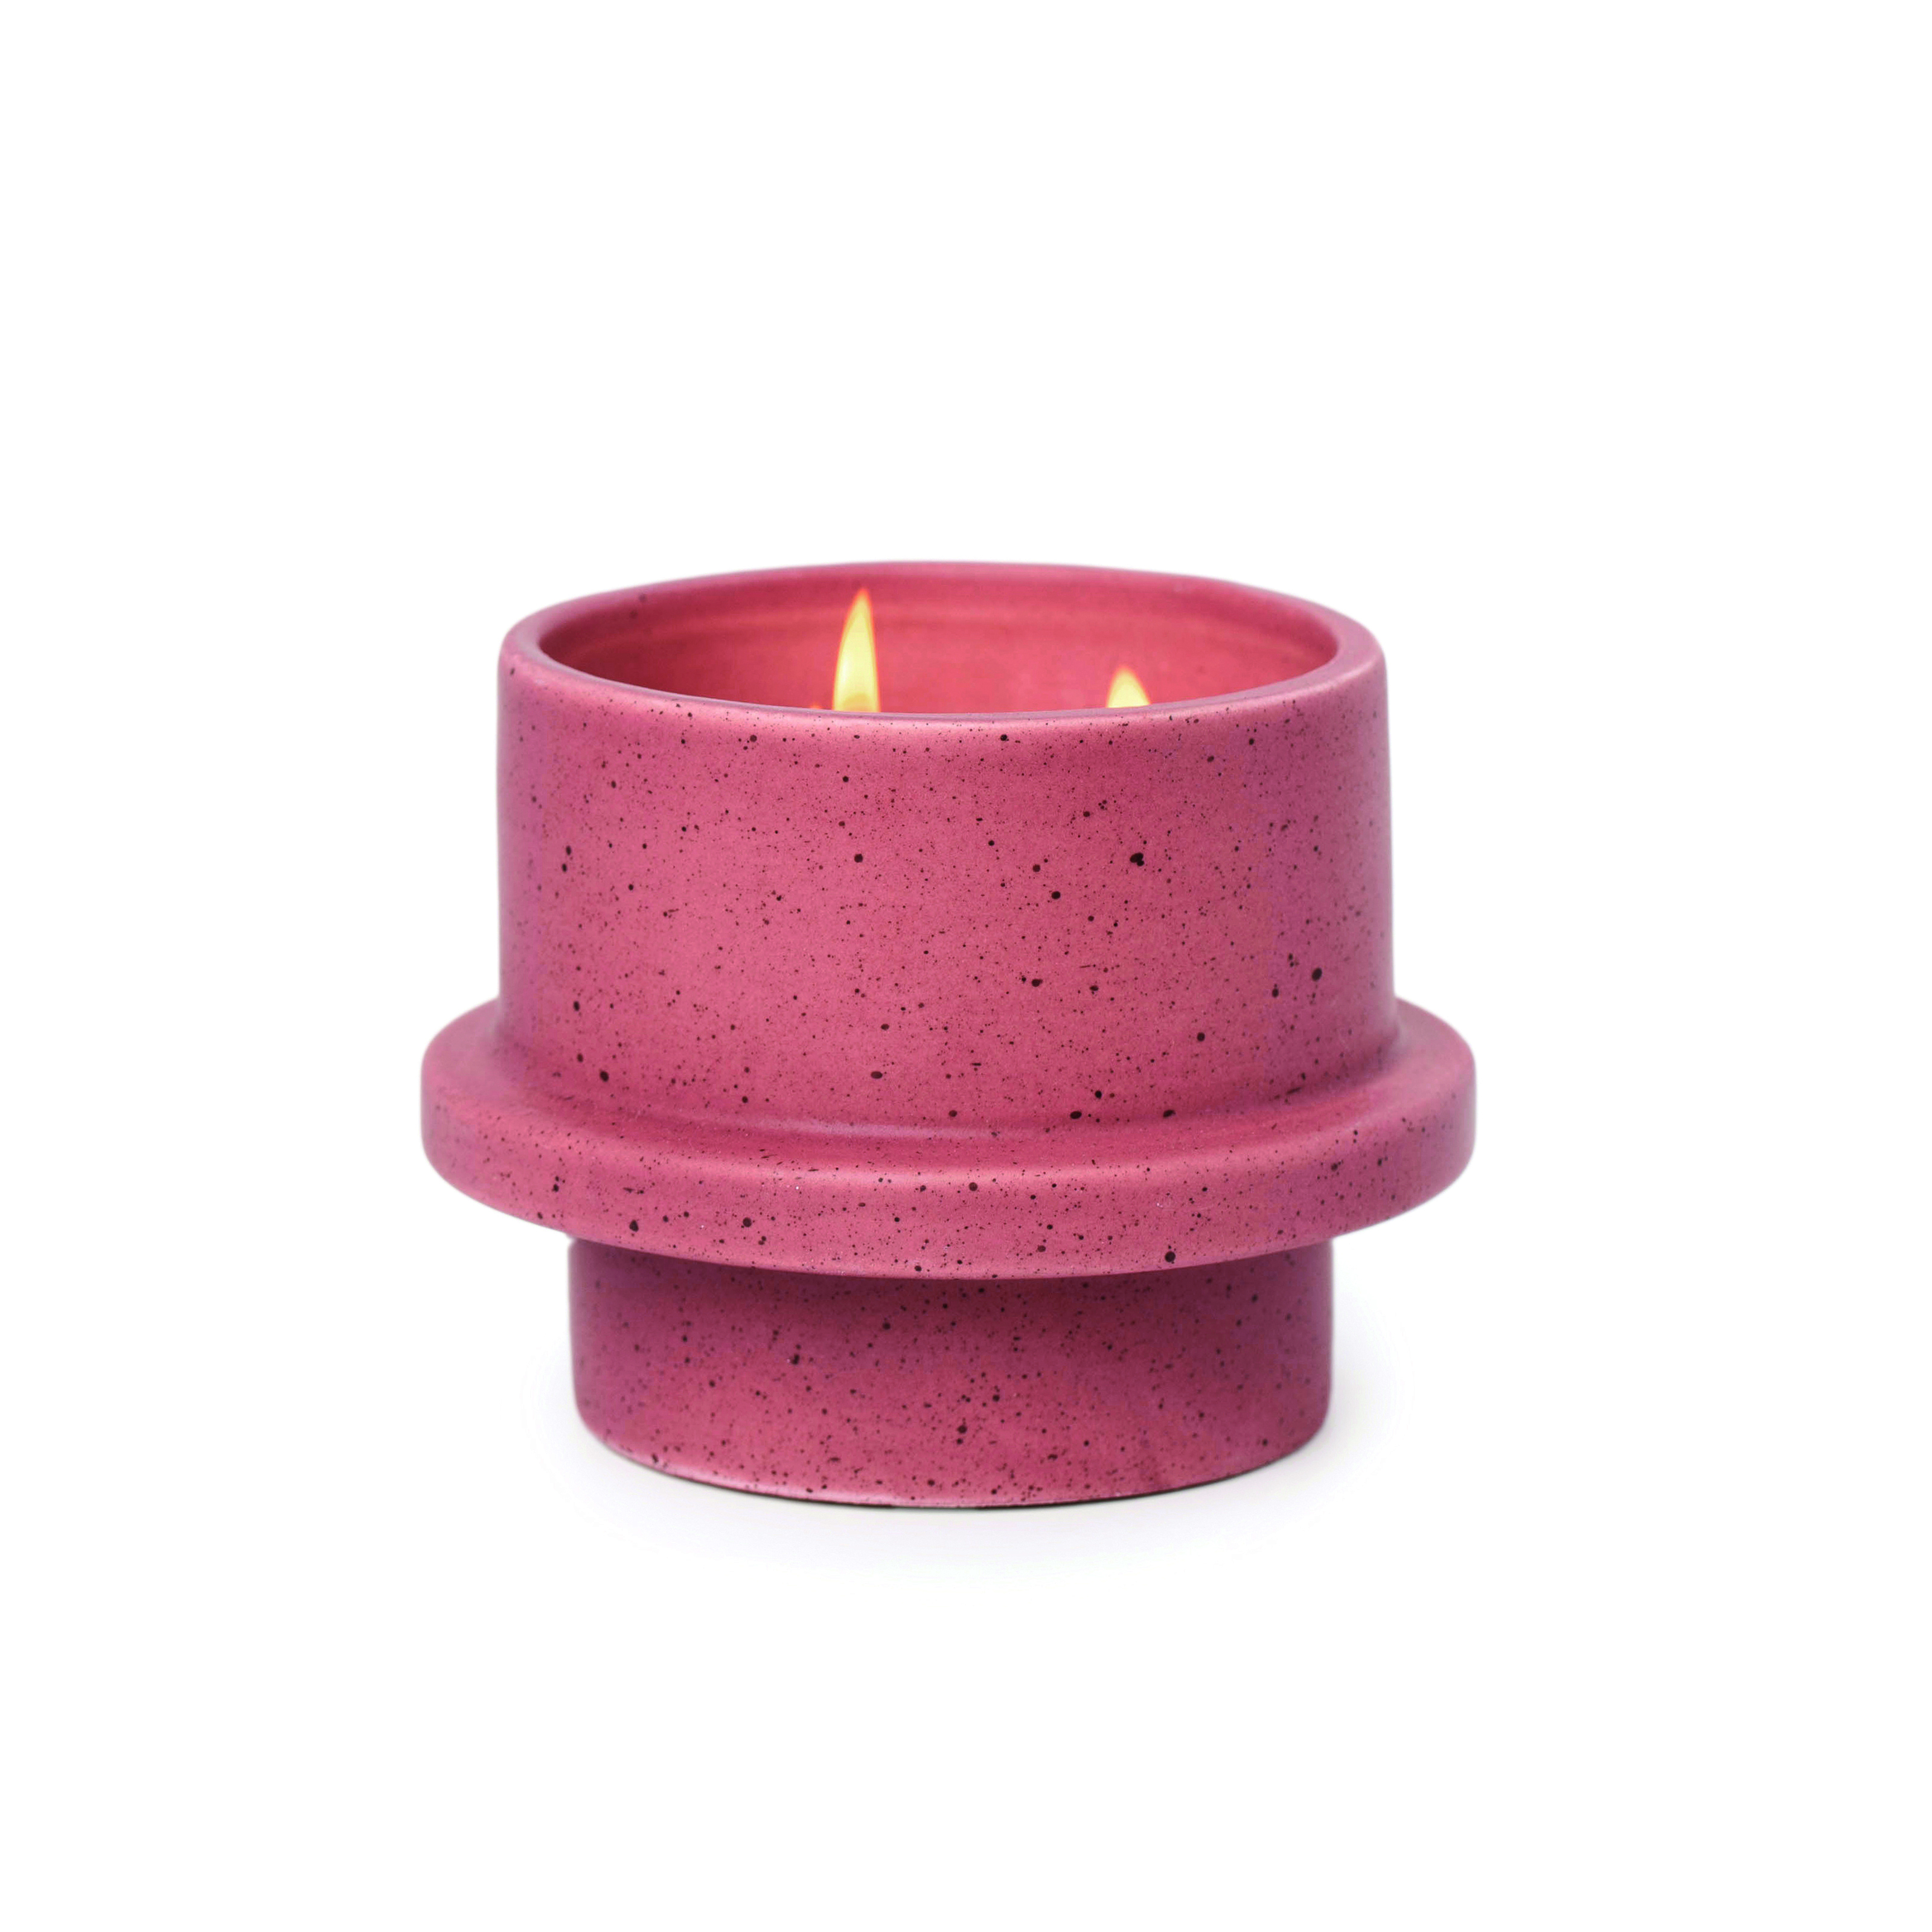 Paddywax Folia Saffron Rose 11.5oz Candle